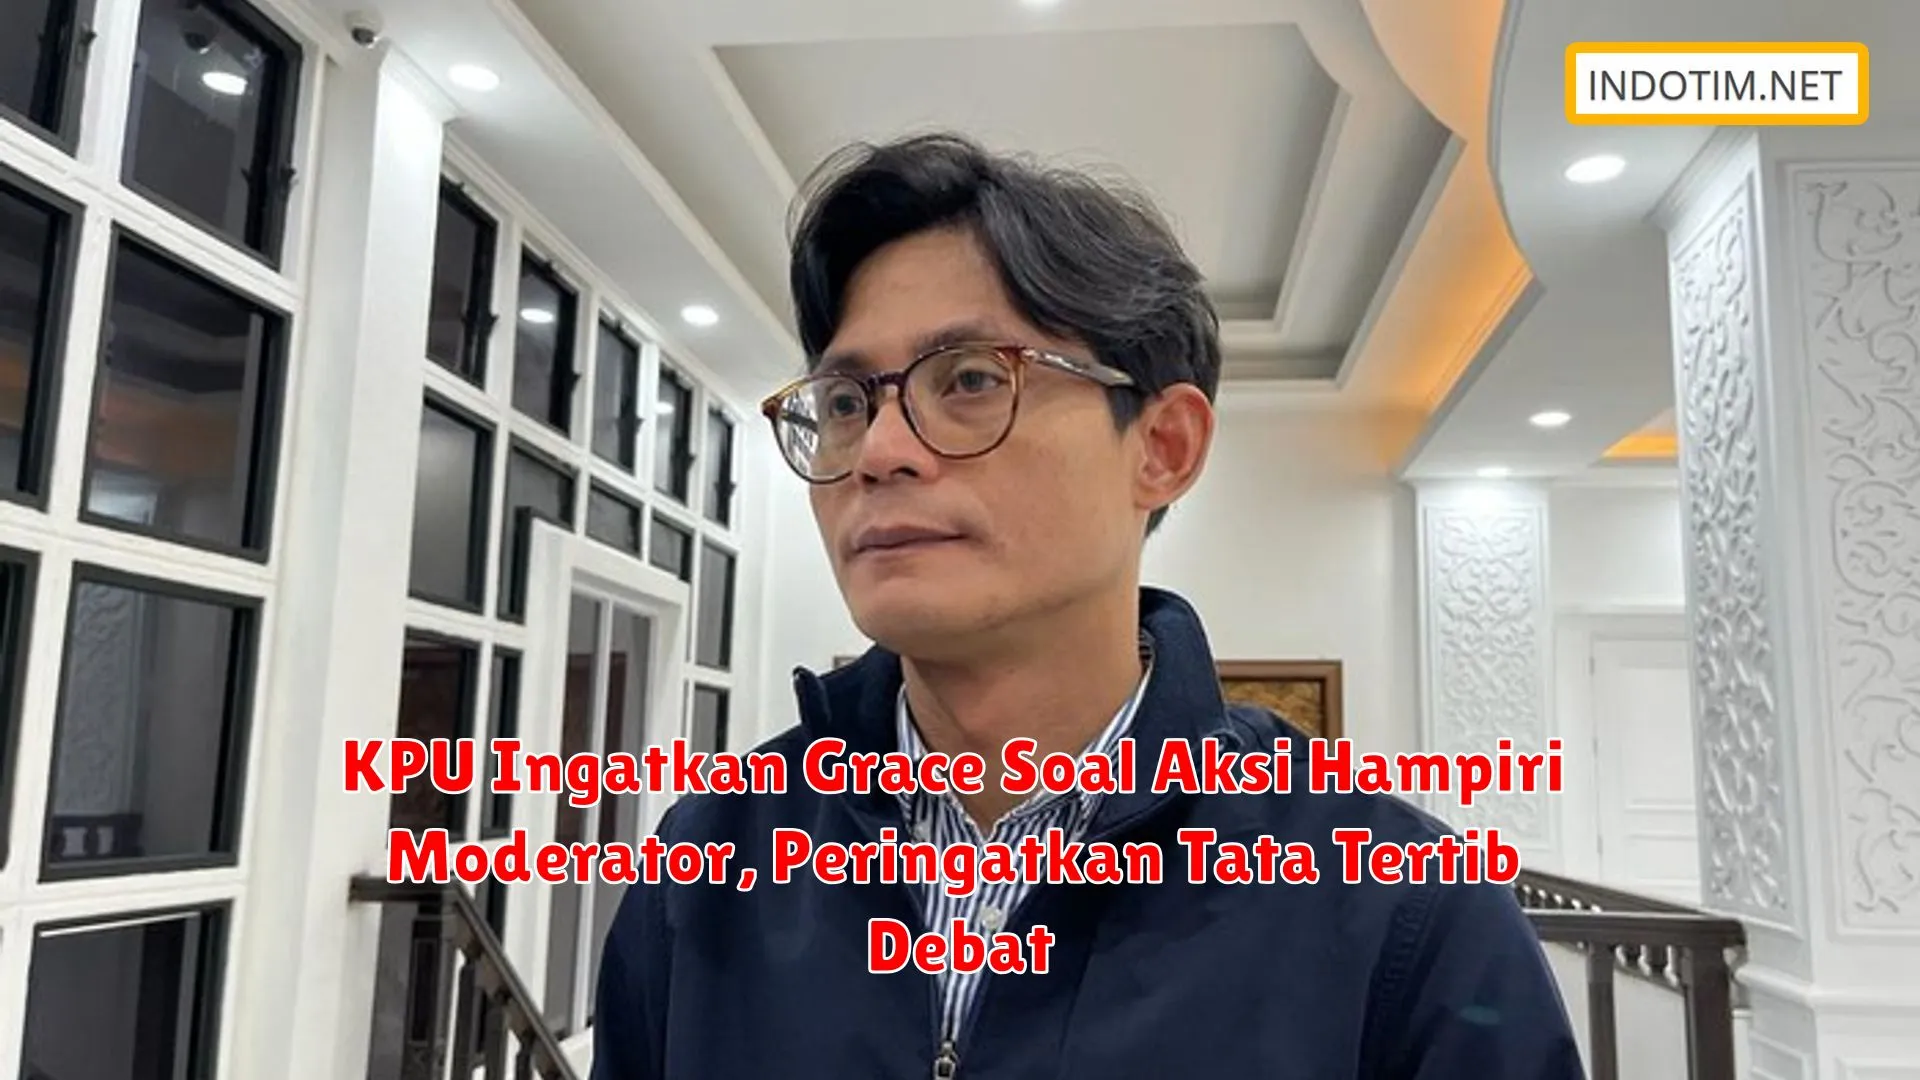 KPU Ingatkan Grace Soal Aksi Hampiri Moderator, Peringatkan Tata Tertib Debat